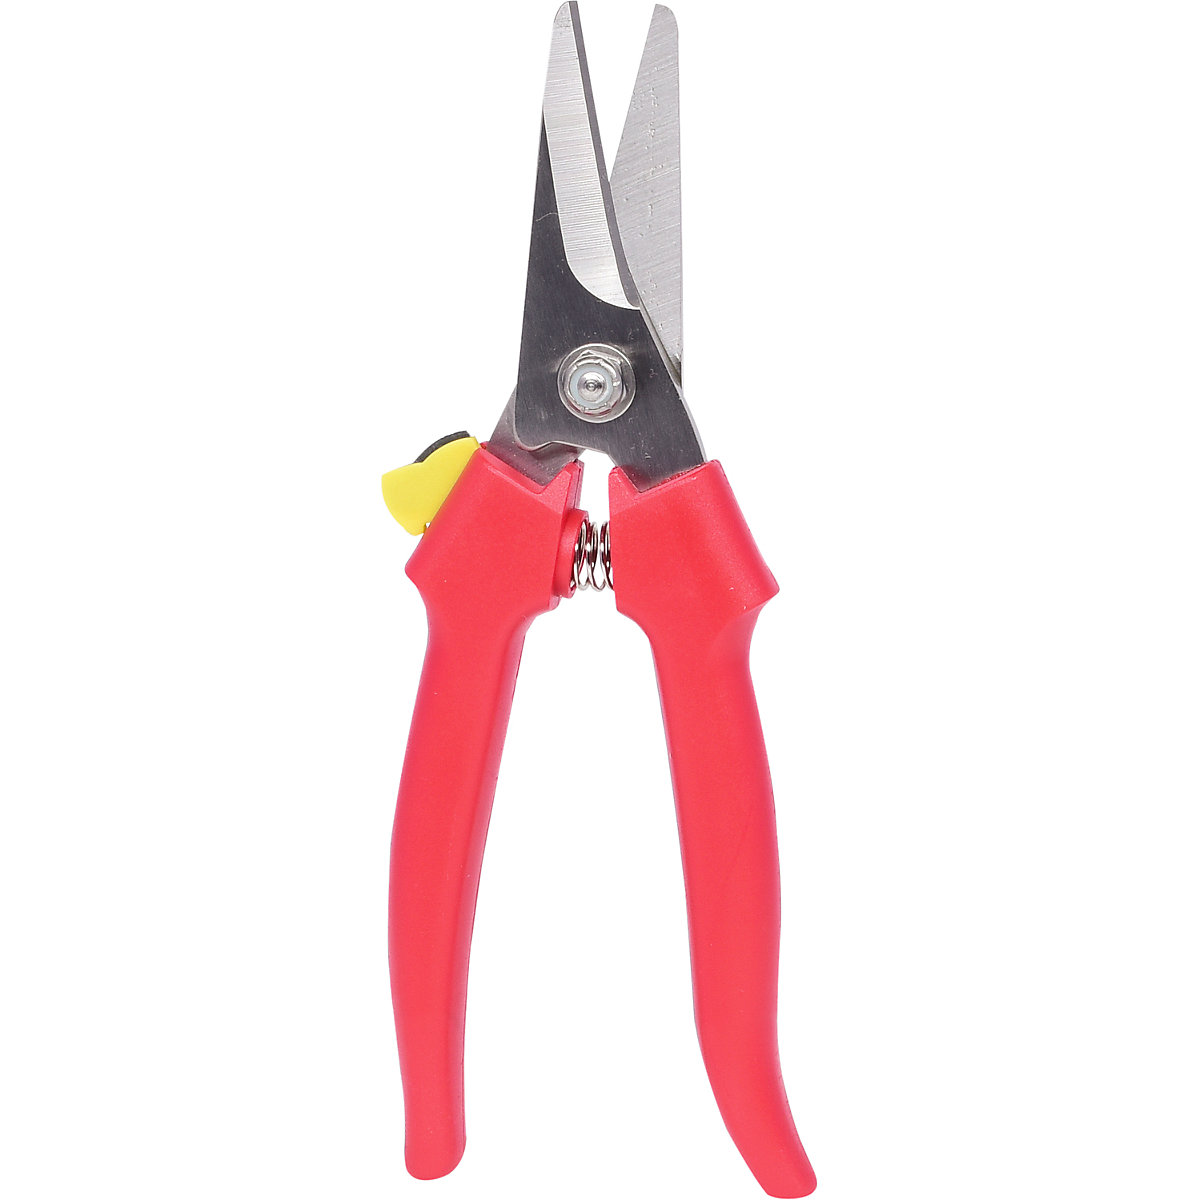 Uniwersalne nożyce warsztatowe – KS Tools (Zdjęcie produktu 2)-1